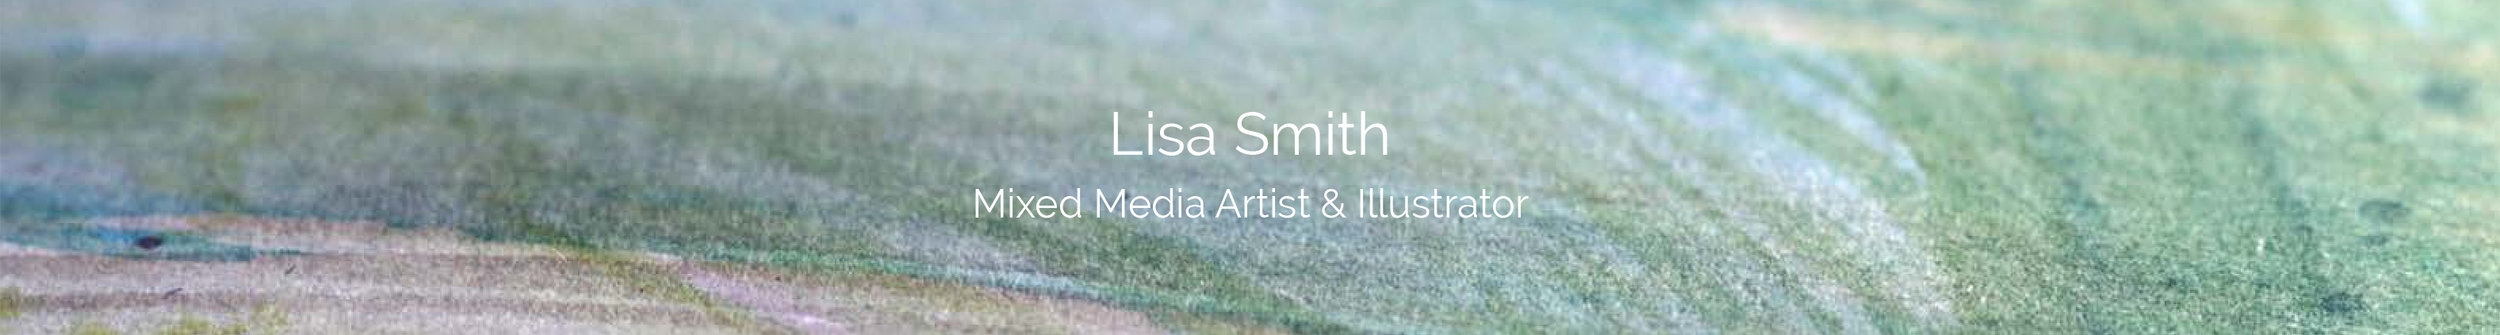 Lisa Smith Artist & Illustrator